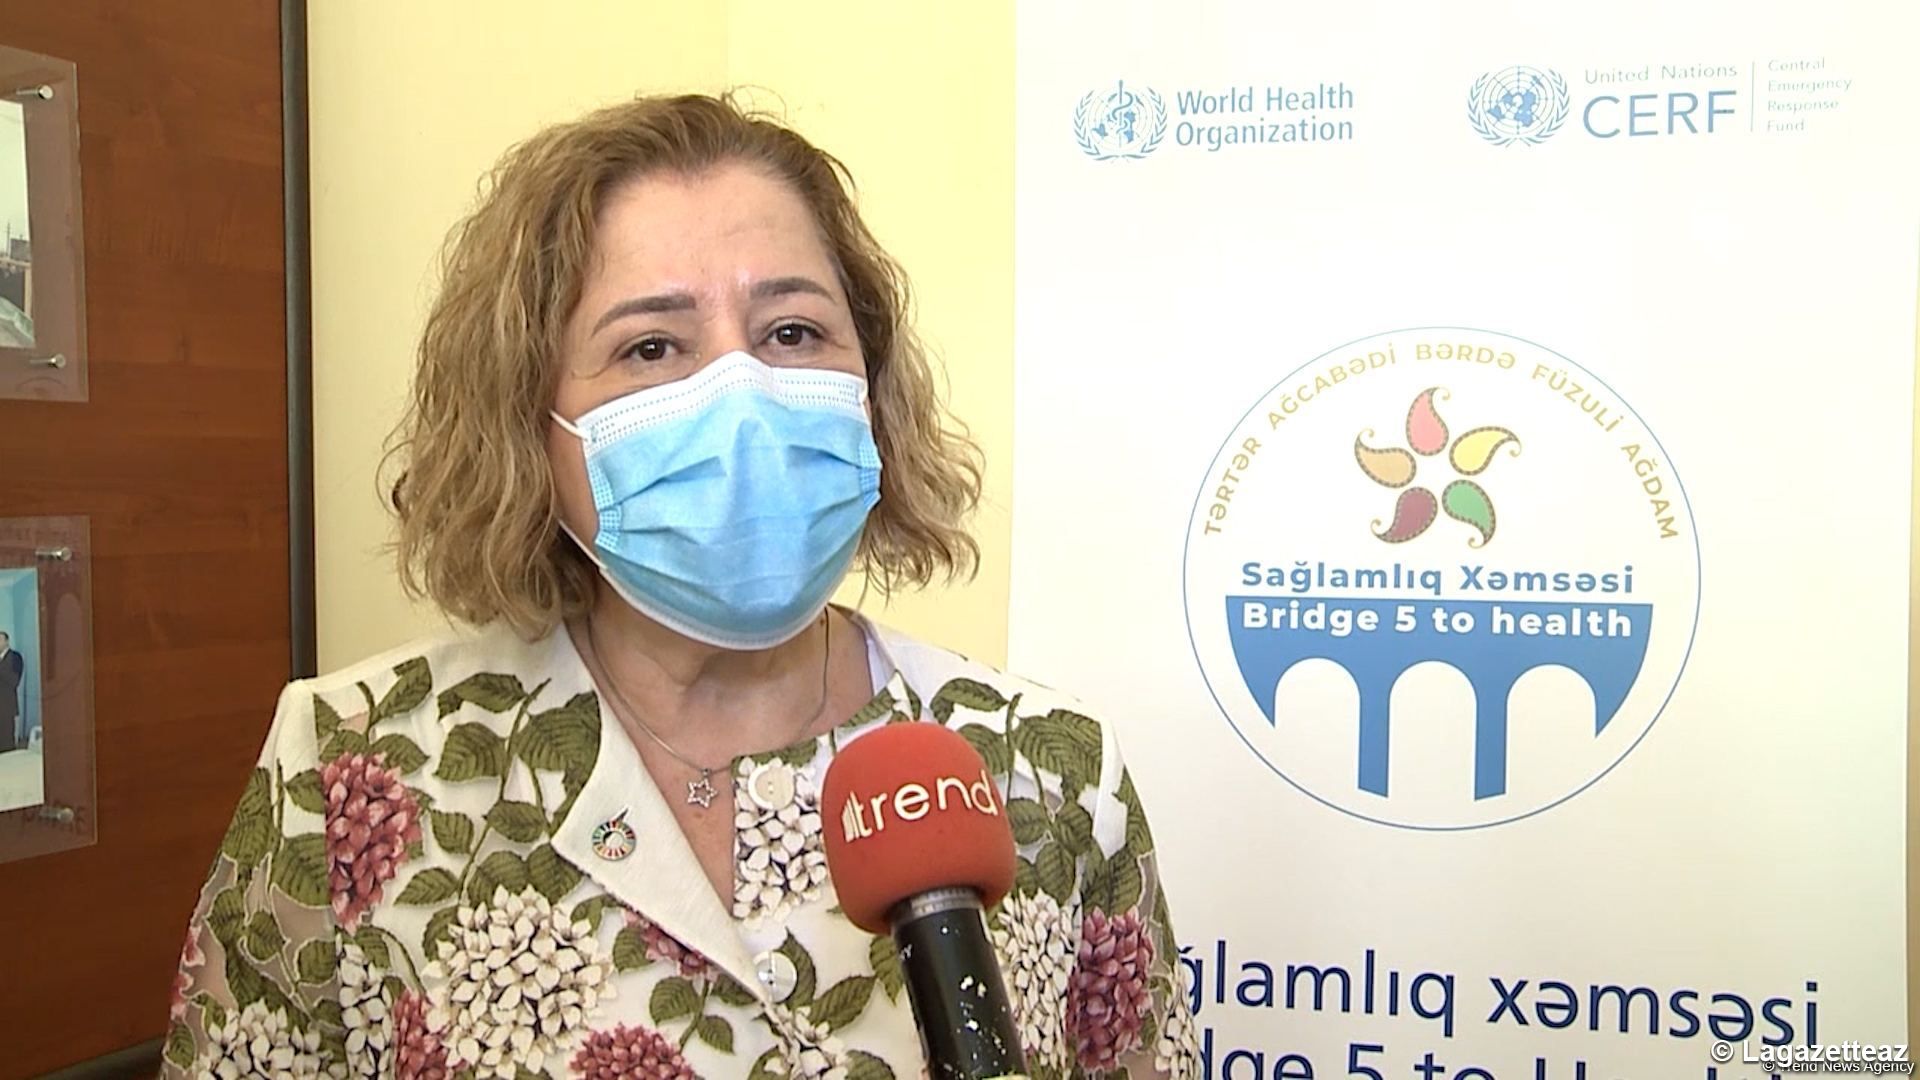 La souche Delta du coronavirus est plus contagieuse, selon la représentante de l'Organisation mondiale de la Santé en Azerbaïdjan